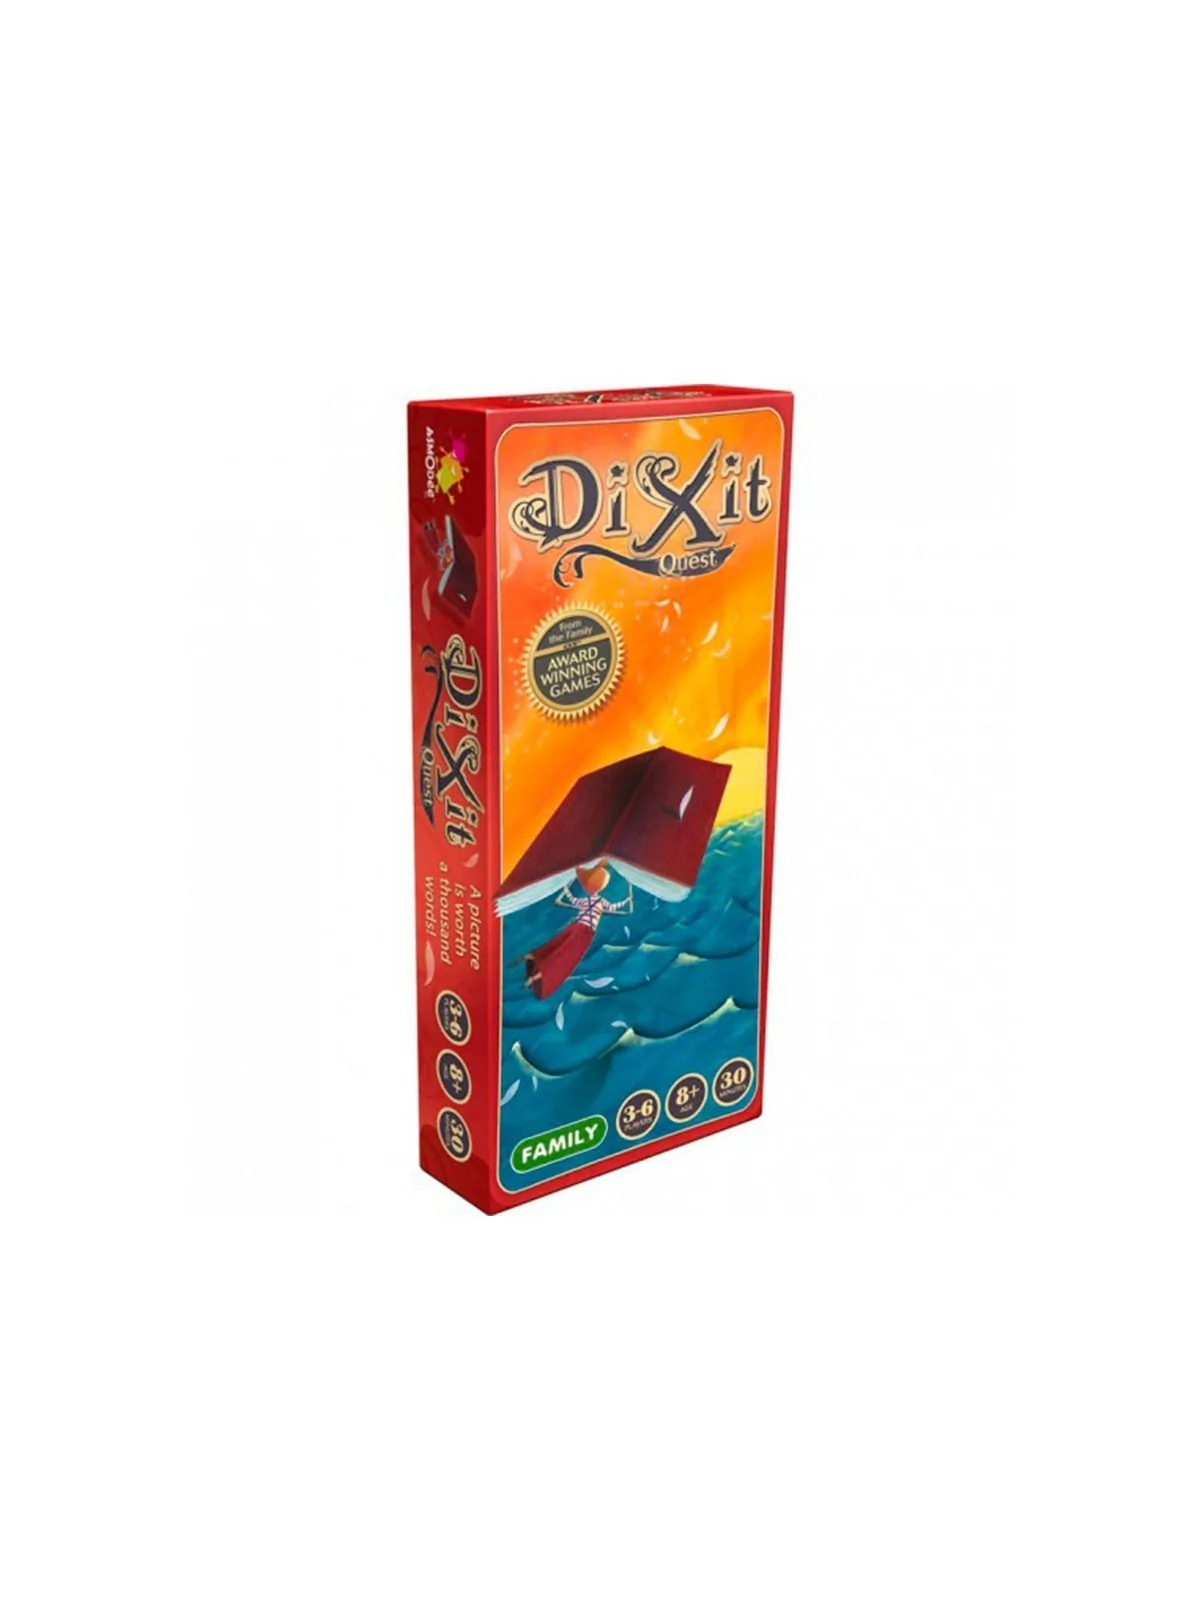 Comprar Dixit Quest barato al mejor precio 19,79 € de Libellud